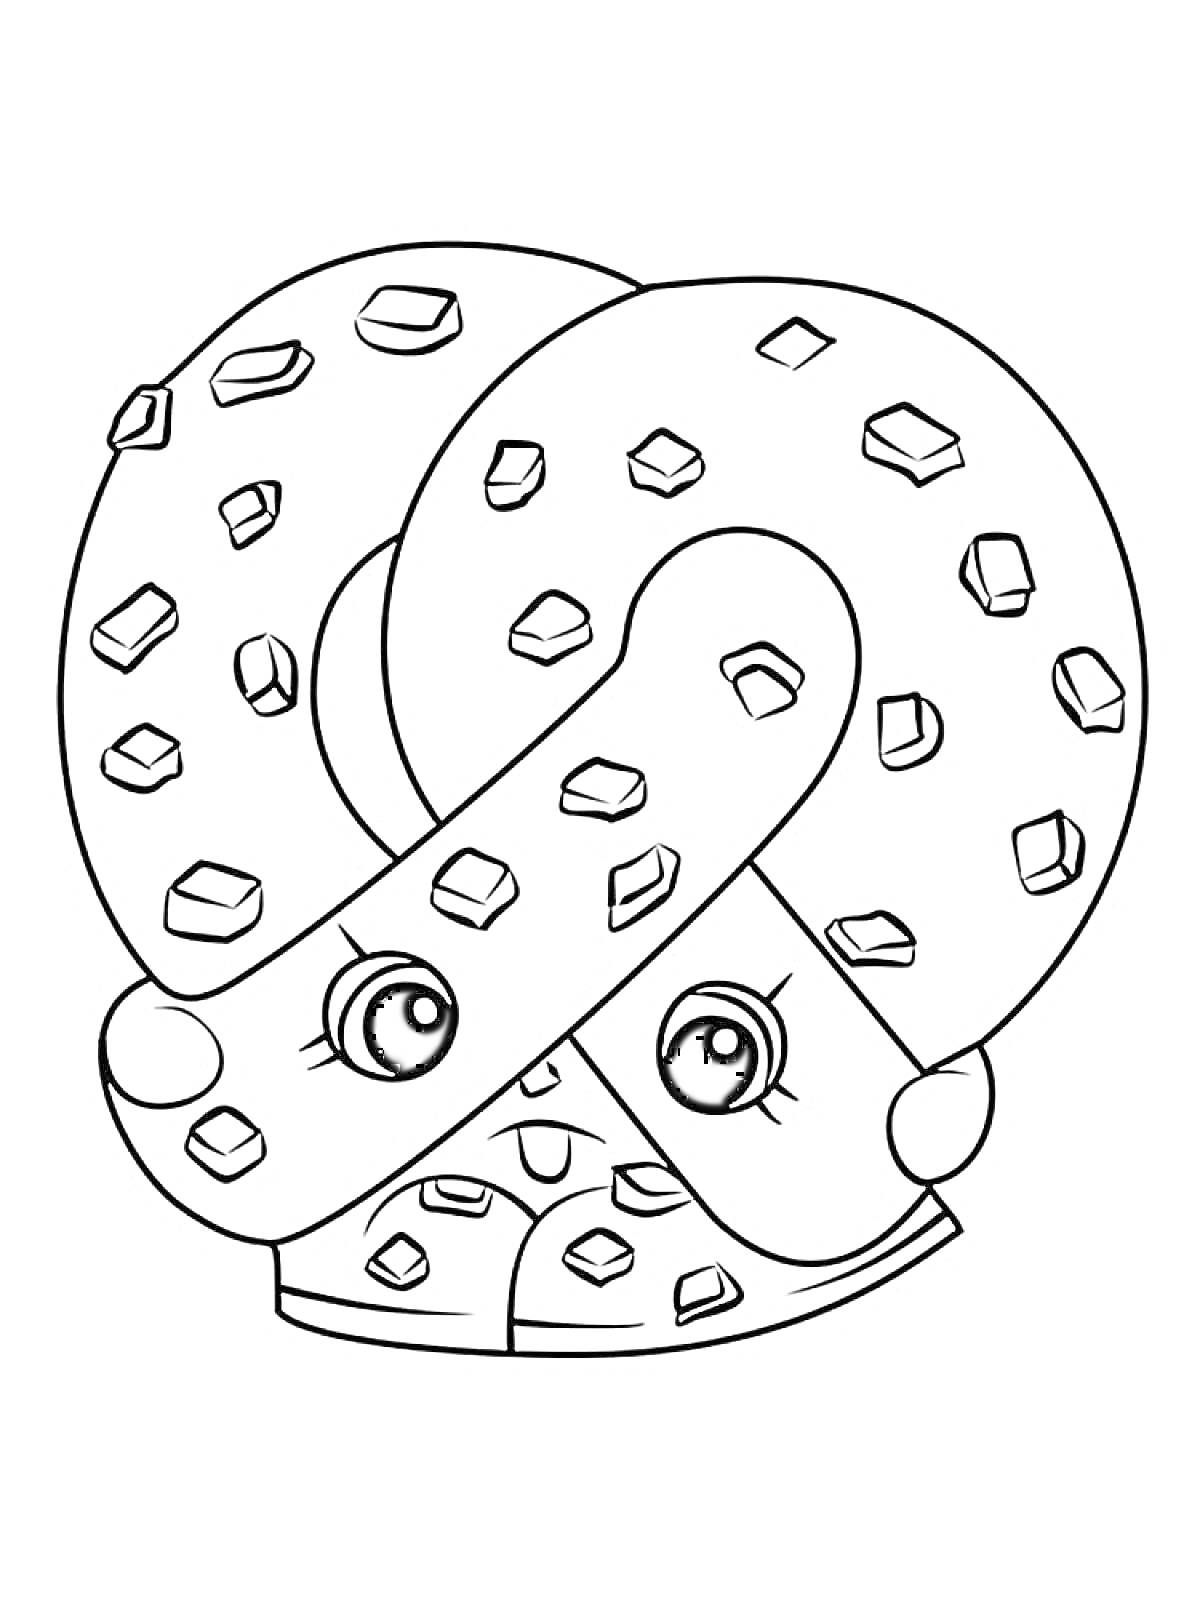 Пряник в форме кренделя с глазами и бровями, украшенный квадратными кусочками